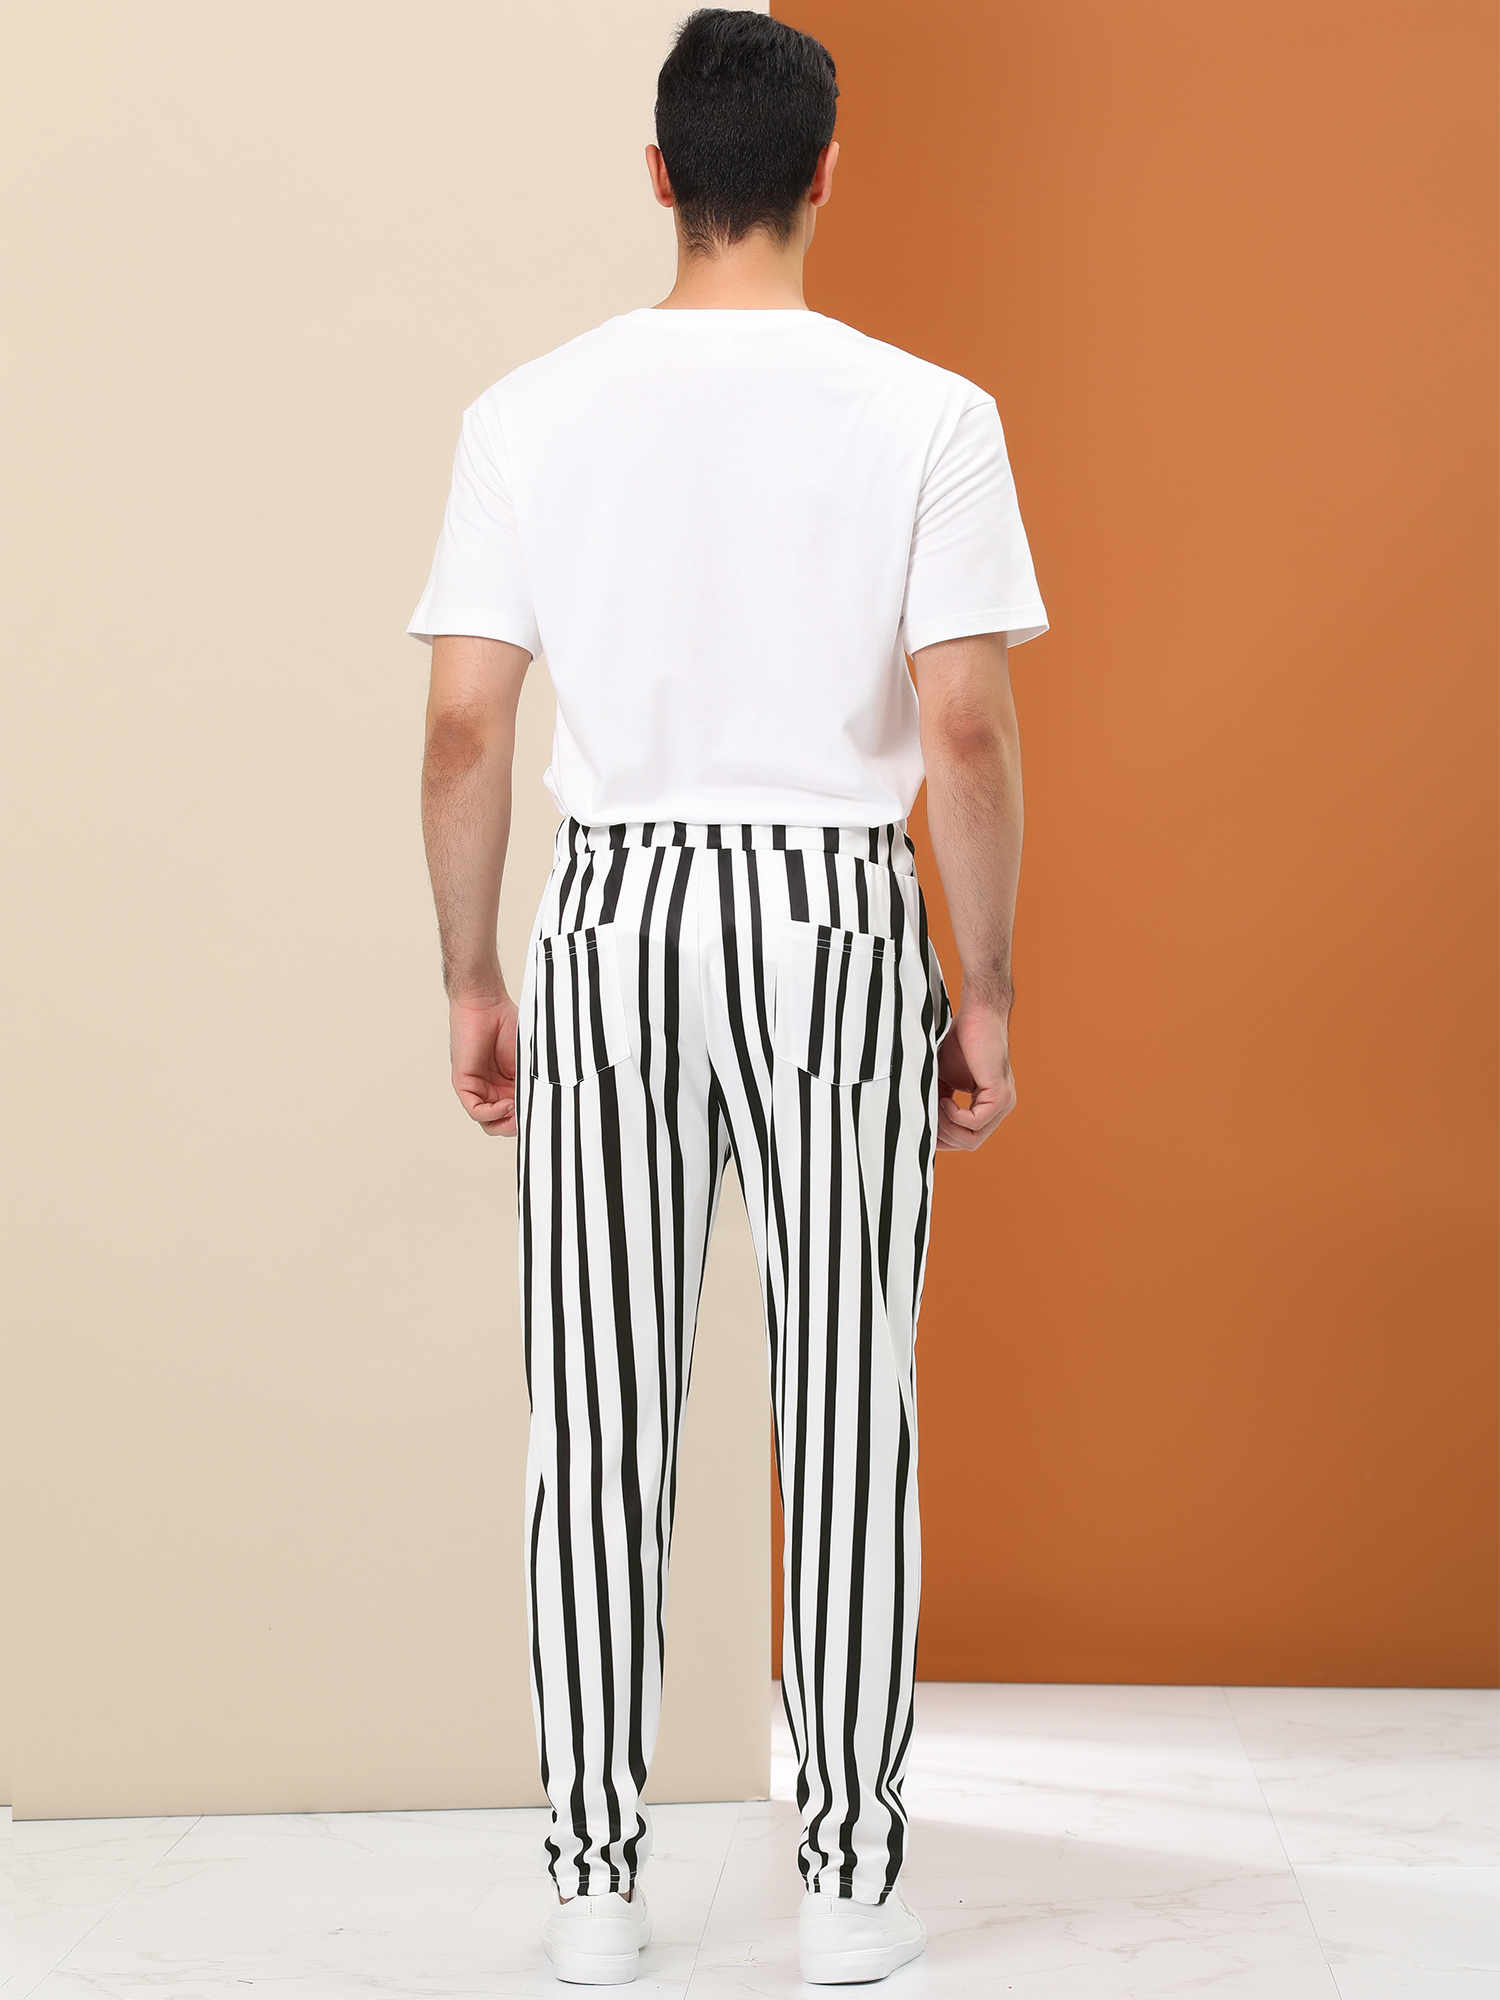 Unique Bargains Lars Amadeus Men's Business Striped Pants Drawstring Slim Fit Dress Trousers